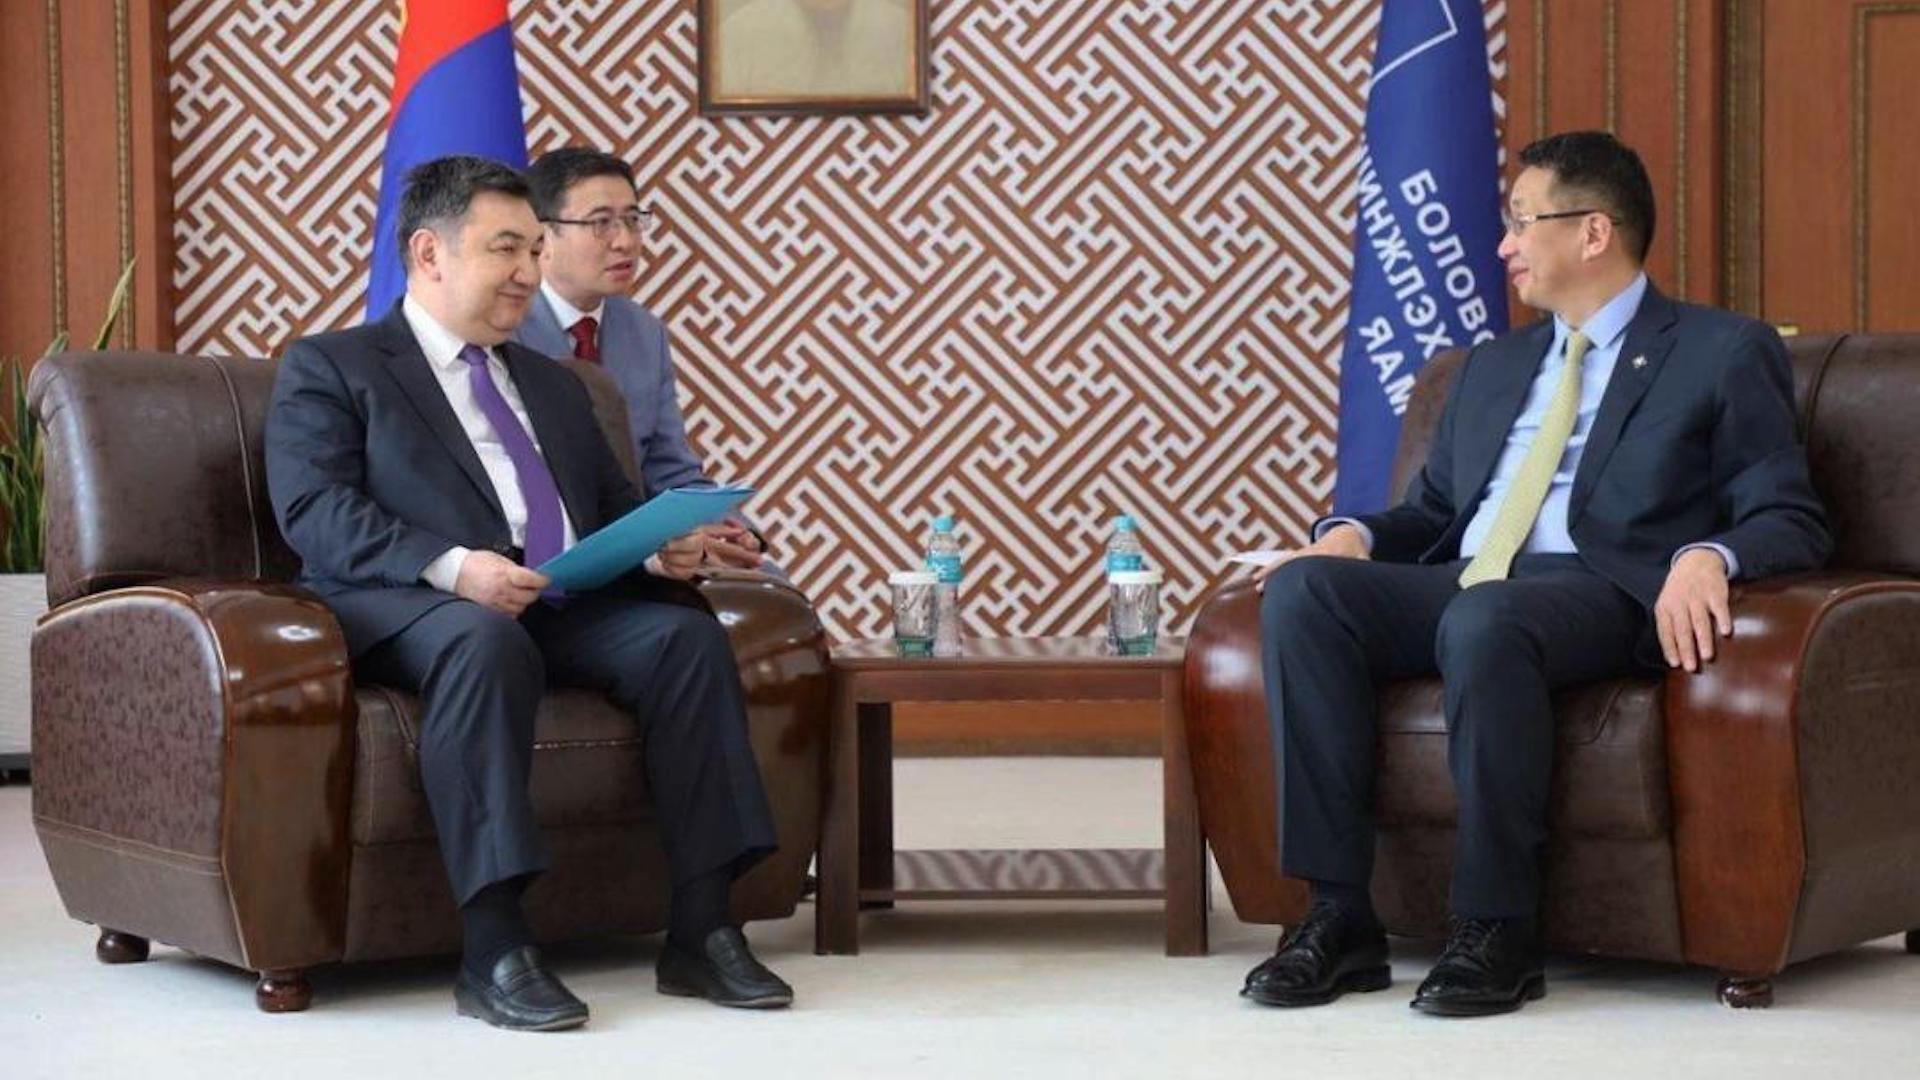 РК и Монголия обсудят сотрудничество в рамках межправительственной комиссии